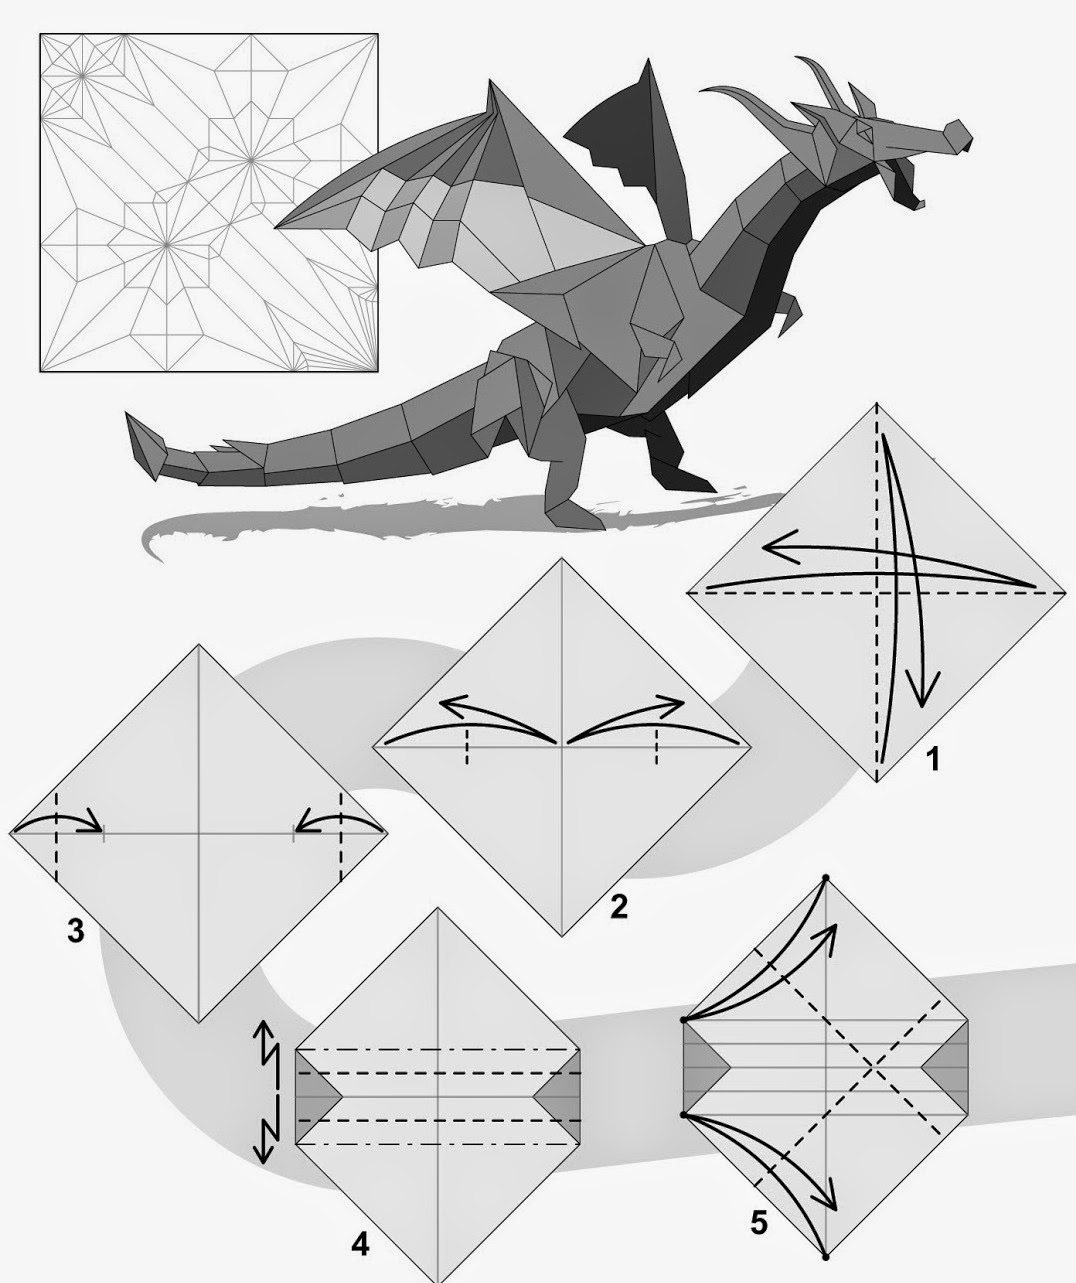 Драконы из бумаги быстро. Оригами из бумаги драконы схемы для начинающих. Оригами из бумаги схема сборки дракон для начинающих. Оригами инструкция дракон для начинающих. Бумажные драконы оригами инструкция.